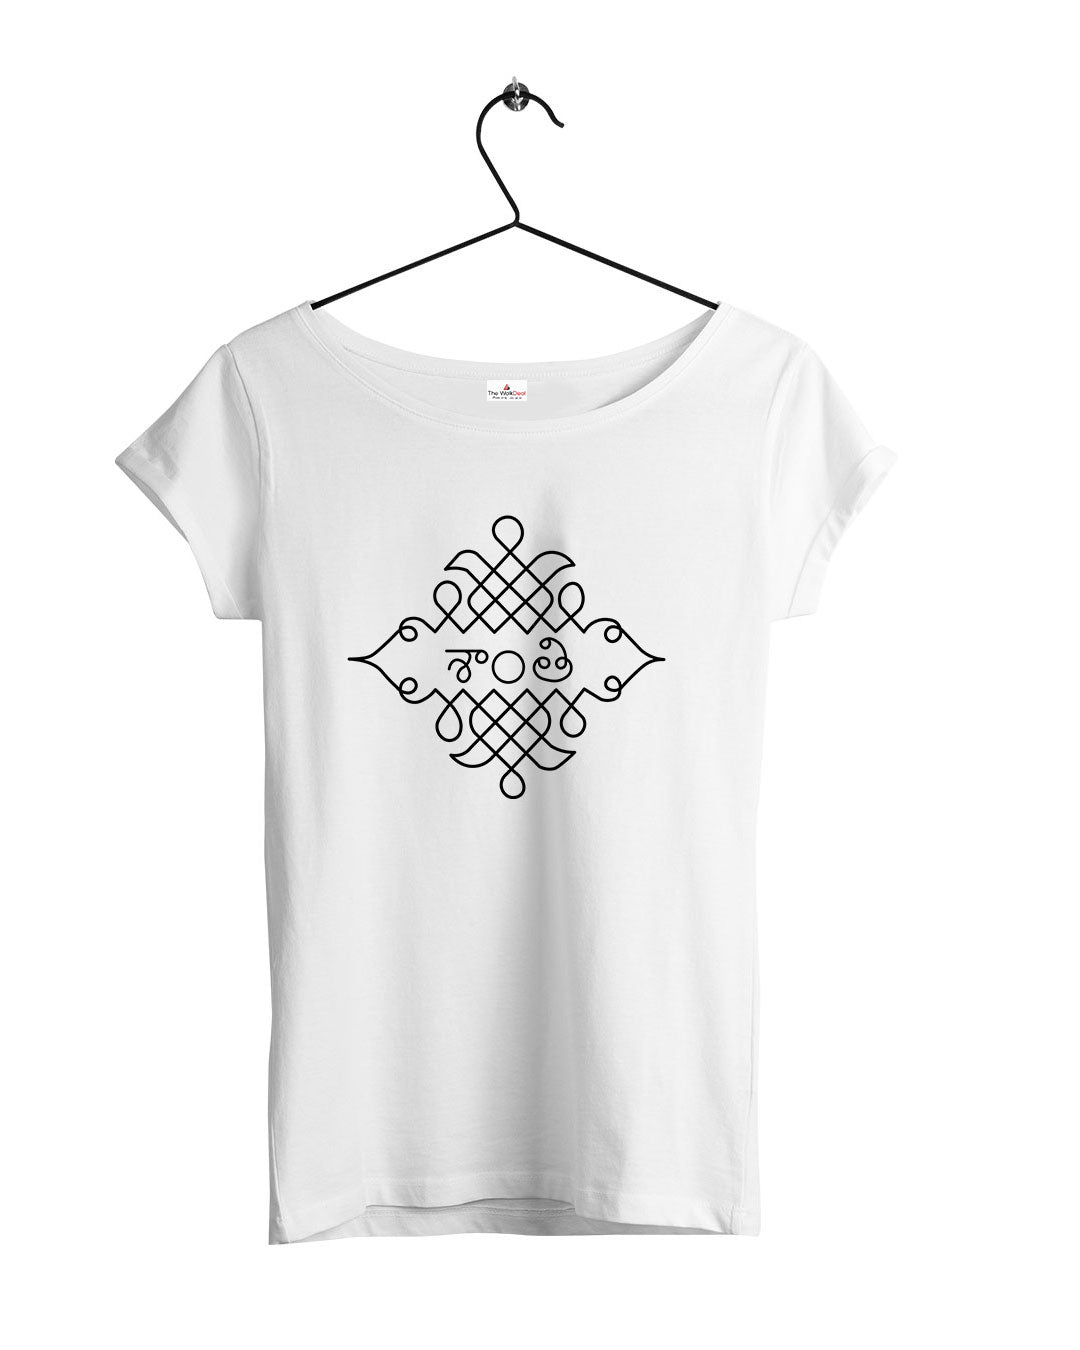 Shanti Graphic T-Shirts For Women